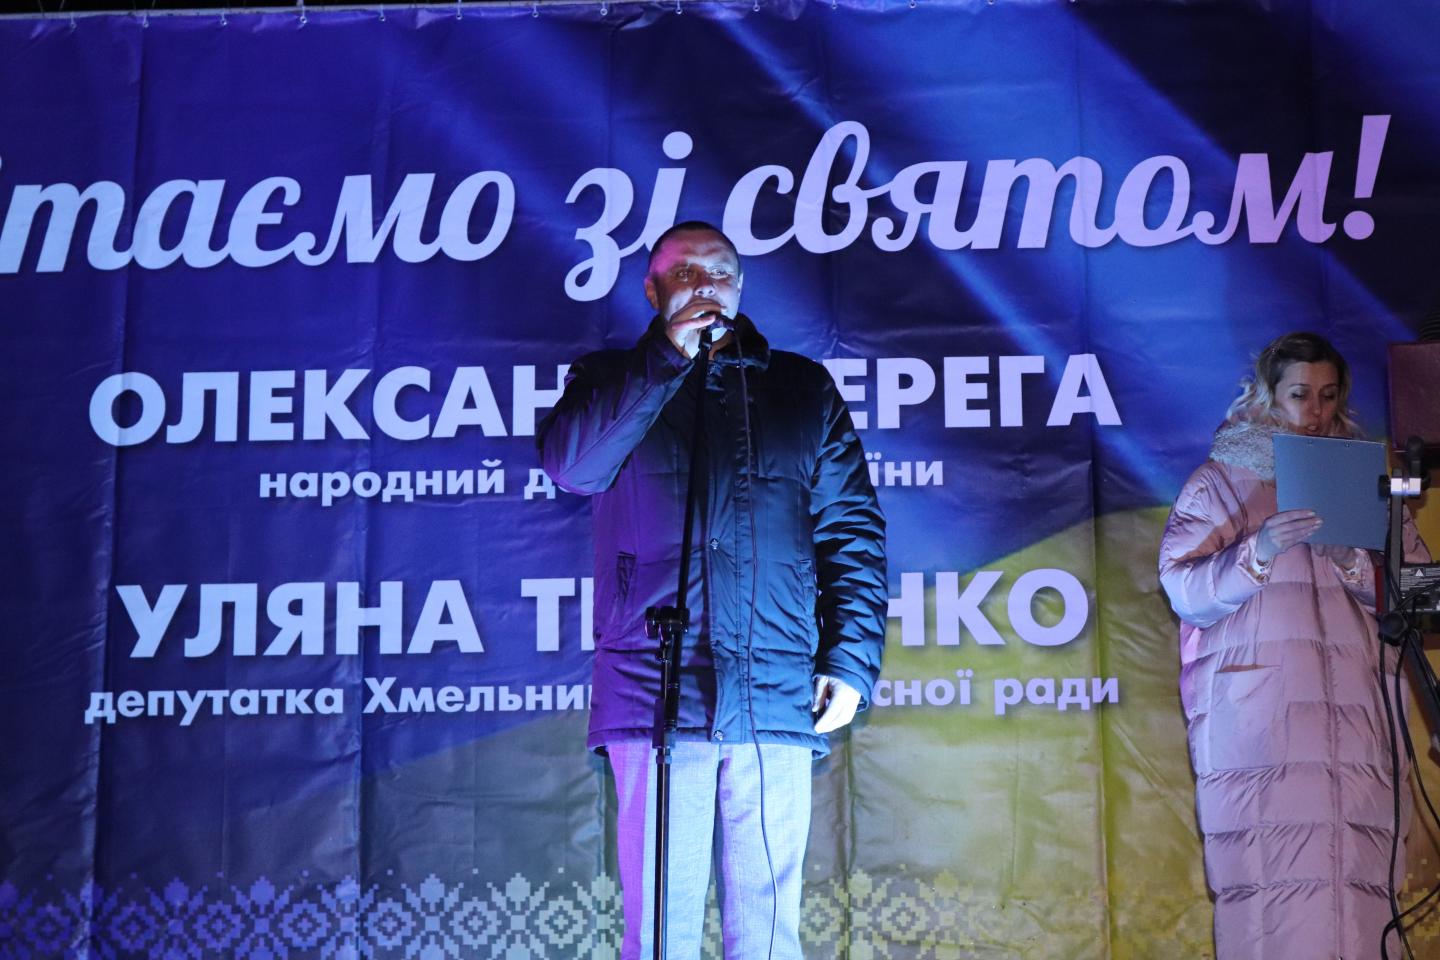 http://dunrada.gov.ua/uploadfile/archive_news/2022/01/01/2022-01-01_8936/images/images-93374.jpg